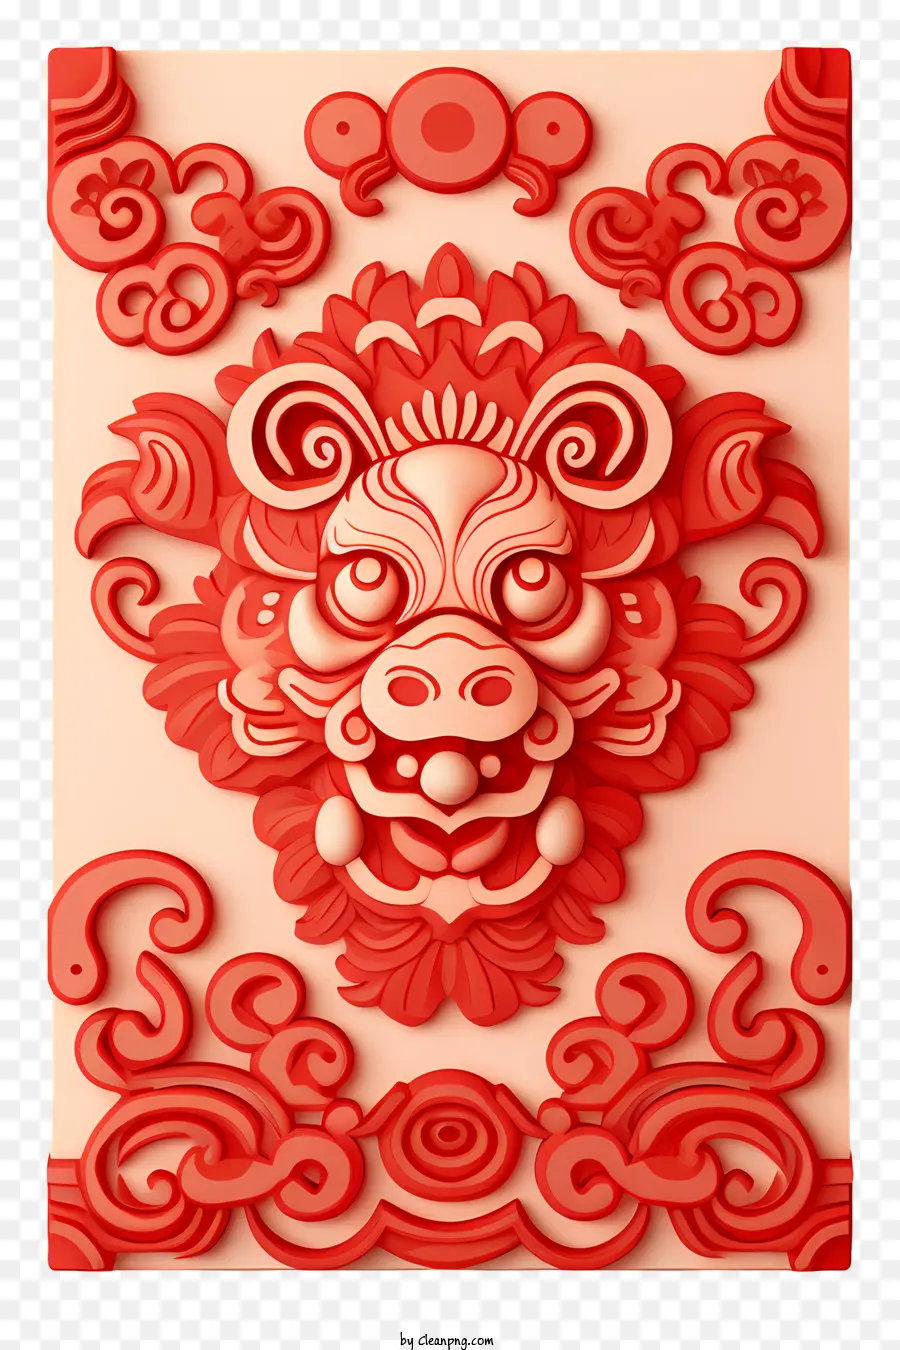 Chinesisches Neujahr - Kompliziertes Red Dragon Design strahlt Frieden und Gelassenheit aus